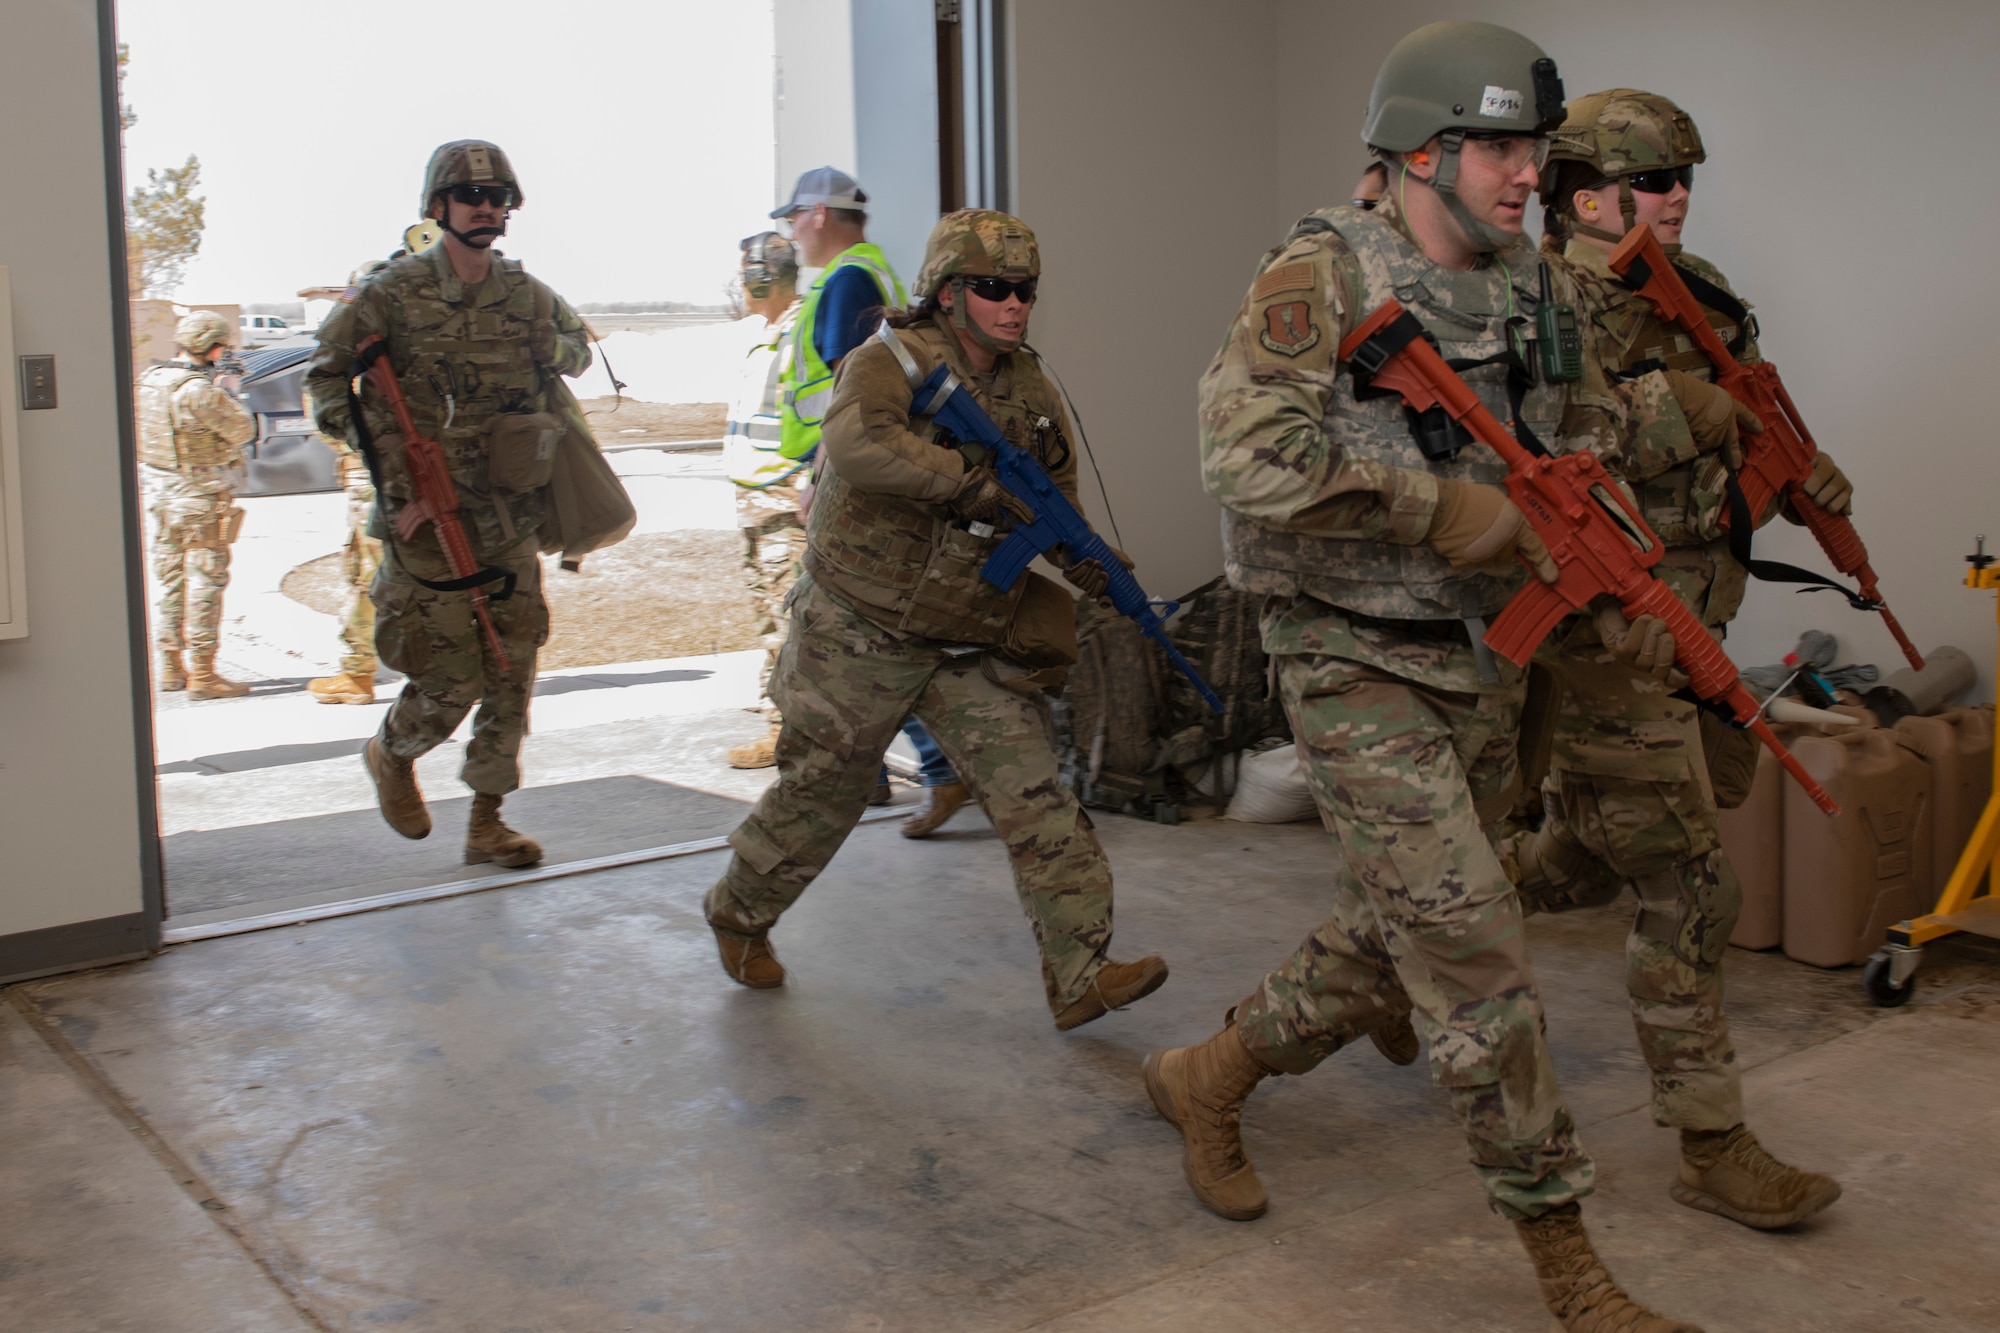 Service members running through an opened door.